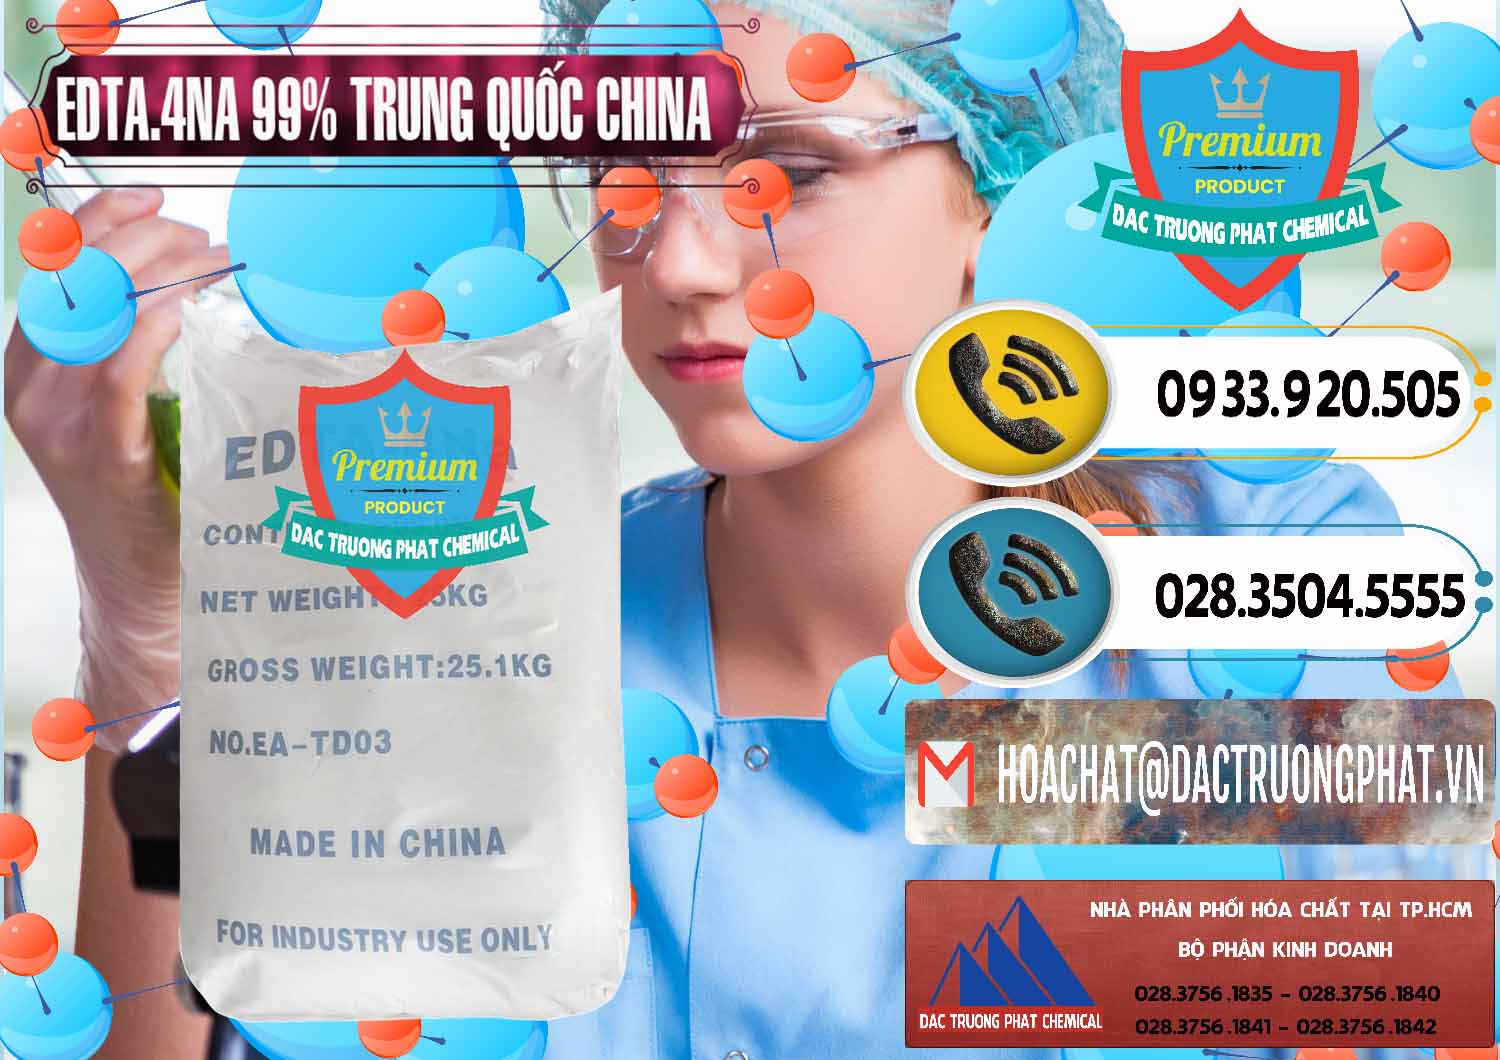 Công ty chuyên kinh doanh & bán EDTA.4NA - EDTA Muối 99% Trung Quốc China - 0292 - Nơi chuyên cung cấp và bán hóa chất tại TP.HCM - hoachatdetnhuom.vn